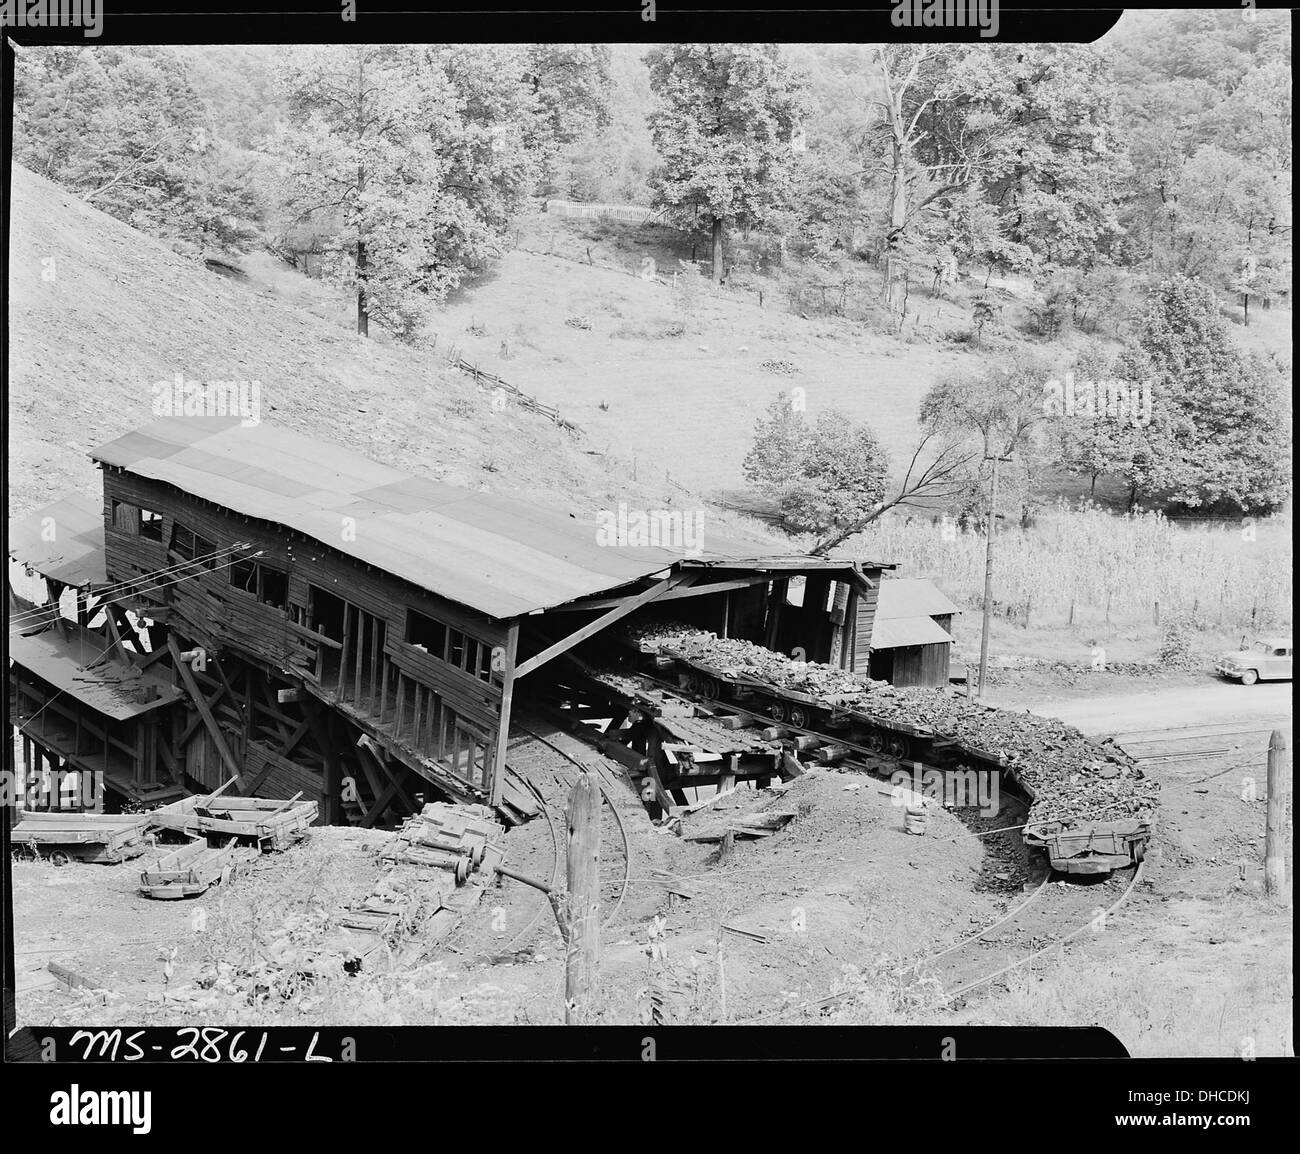 The tipple. P V & K Coal Company, Clover Gap Mine, Lejunior, Harlan County, Kentucky. 541390 Stock Photo